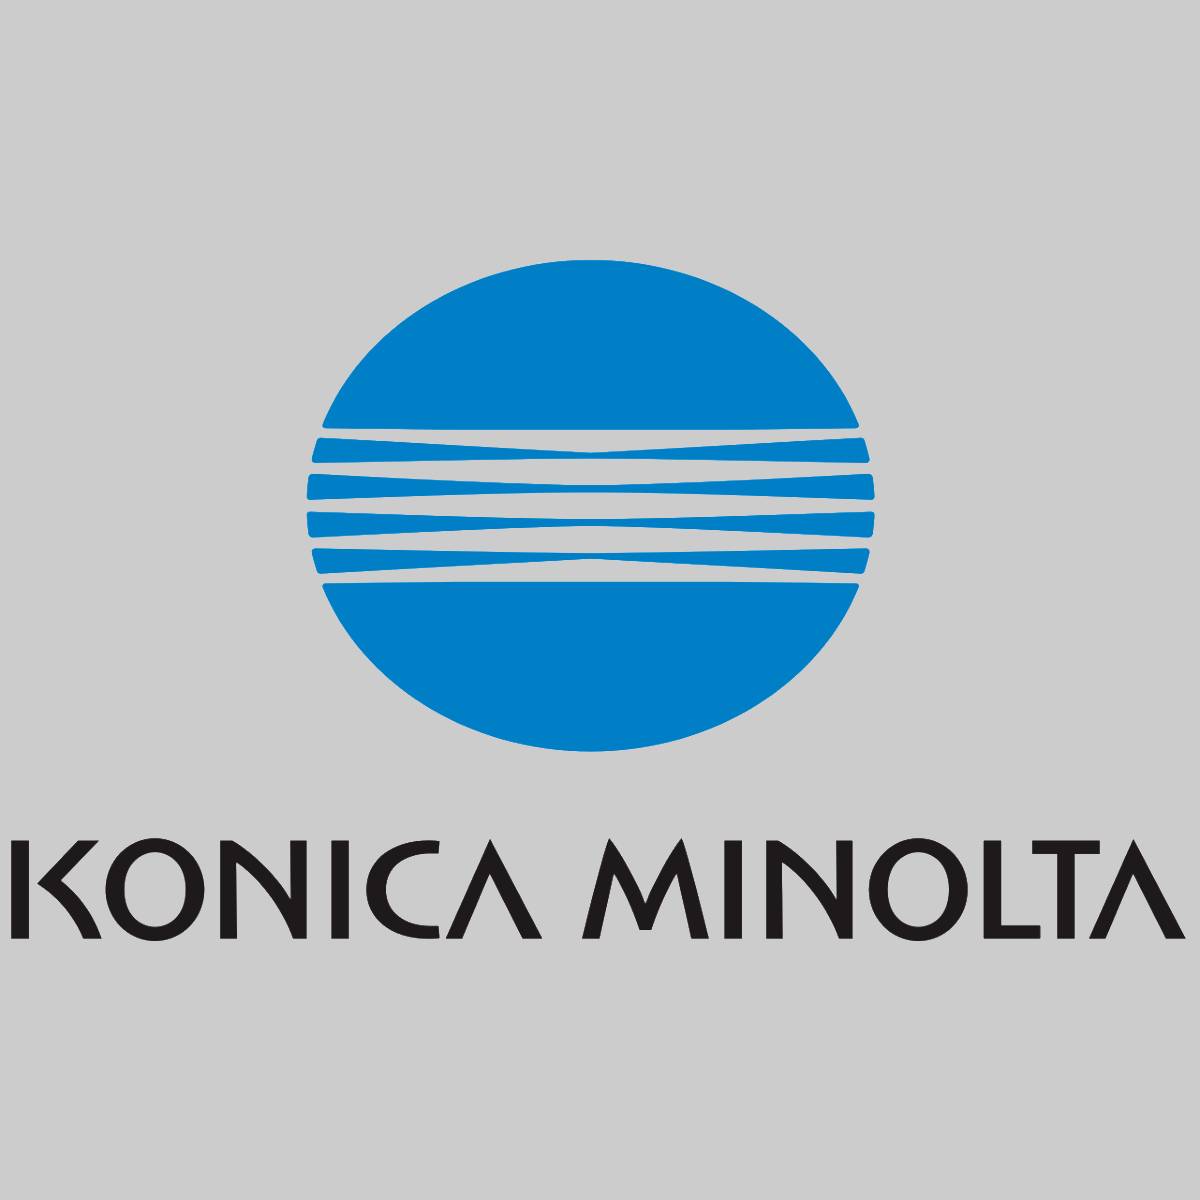 Original Konica Minolta PWB Assembly AA7NH02102 Bizhub C450 C550 C650 Neu OVP^